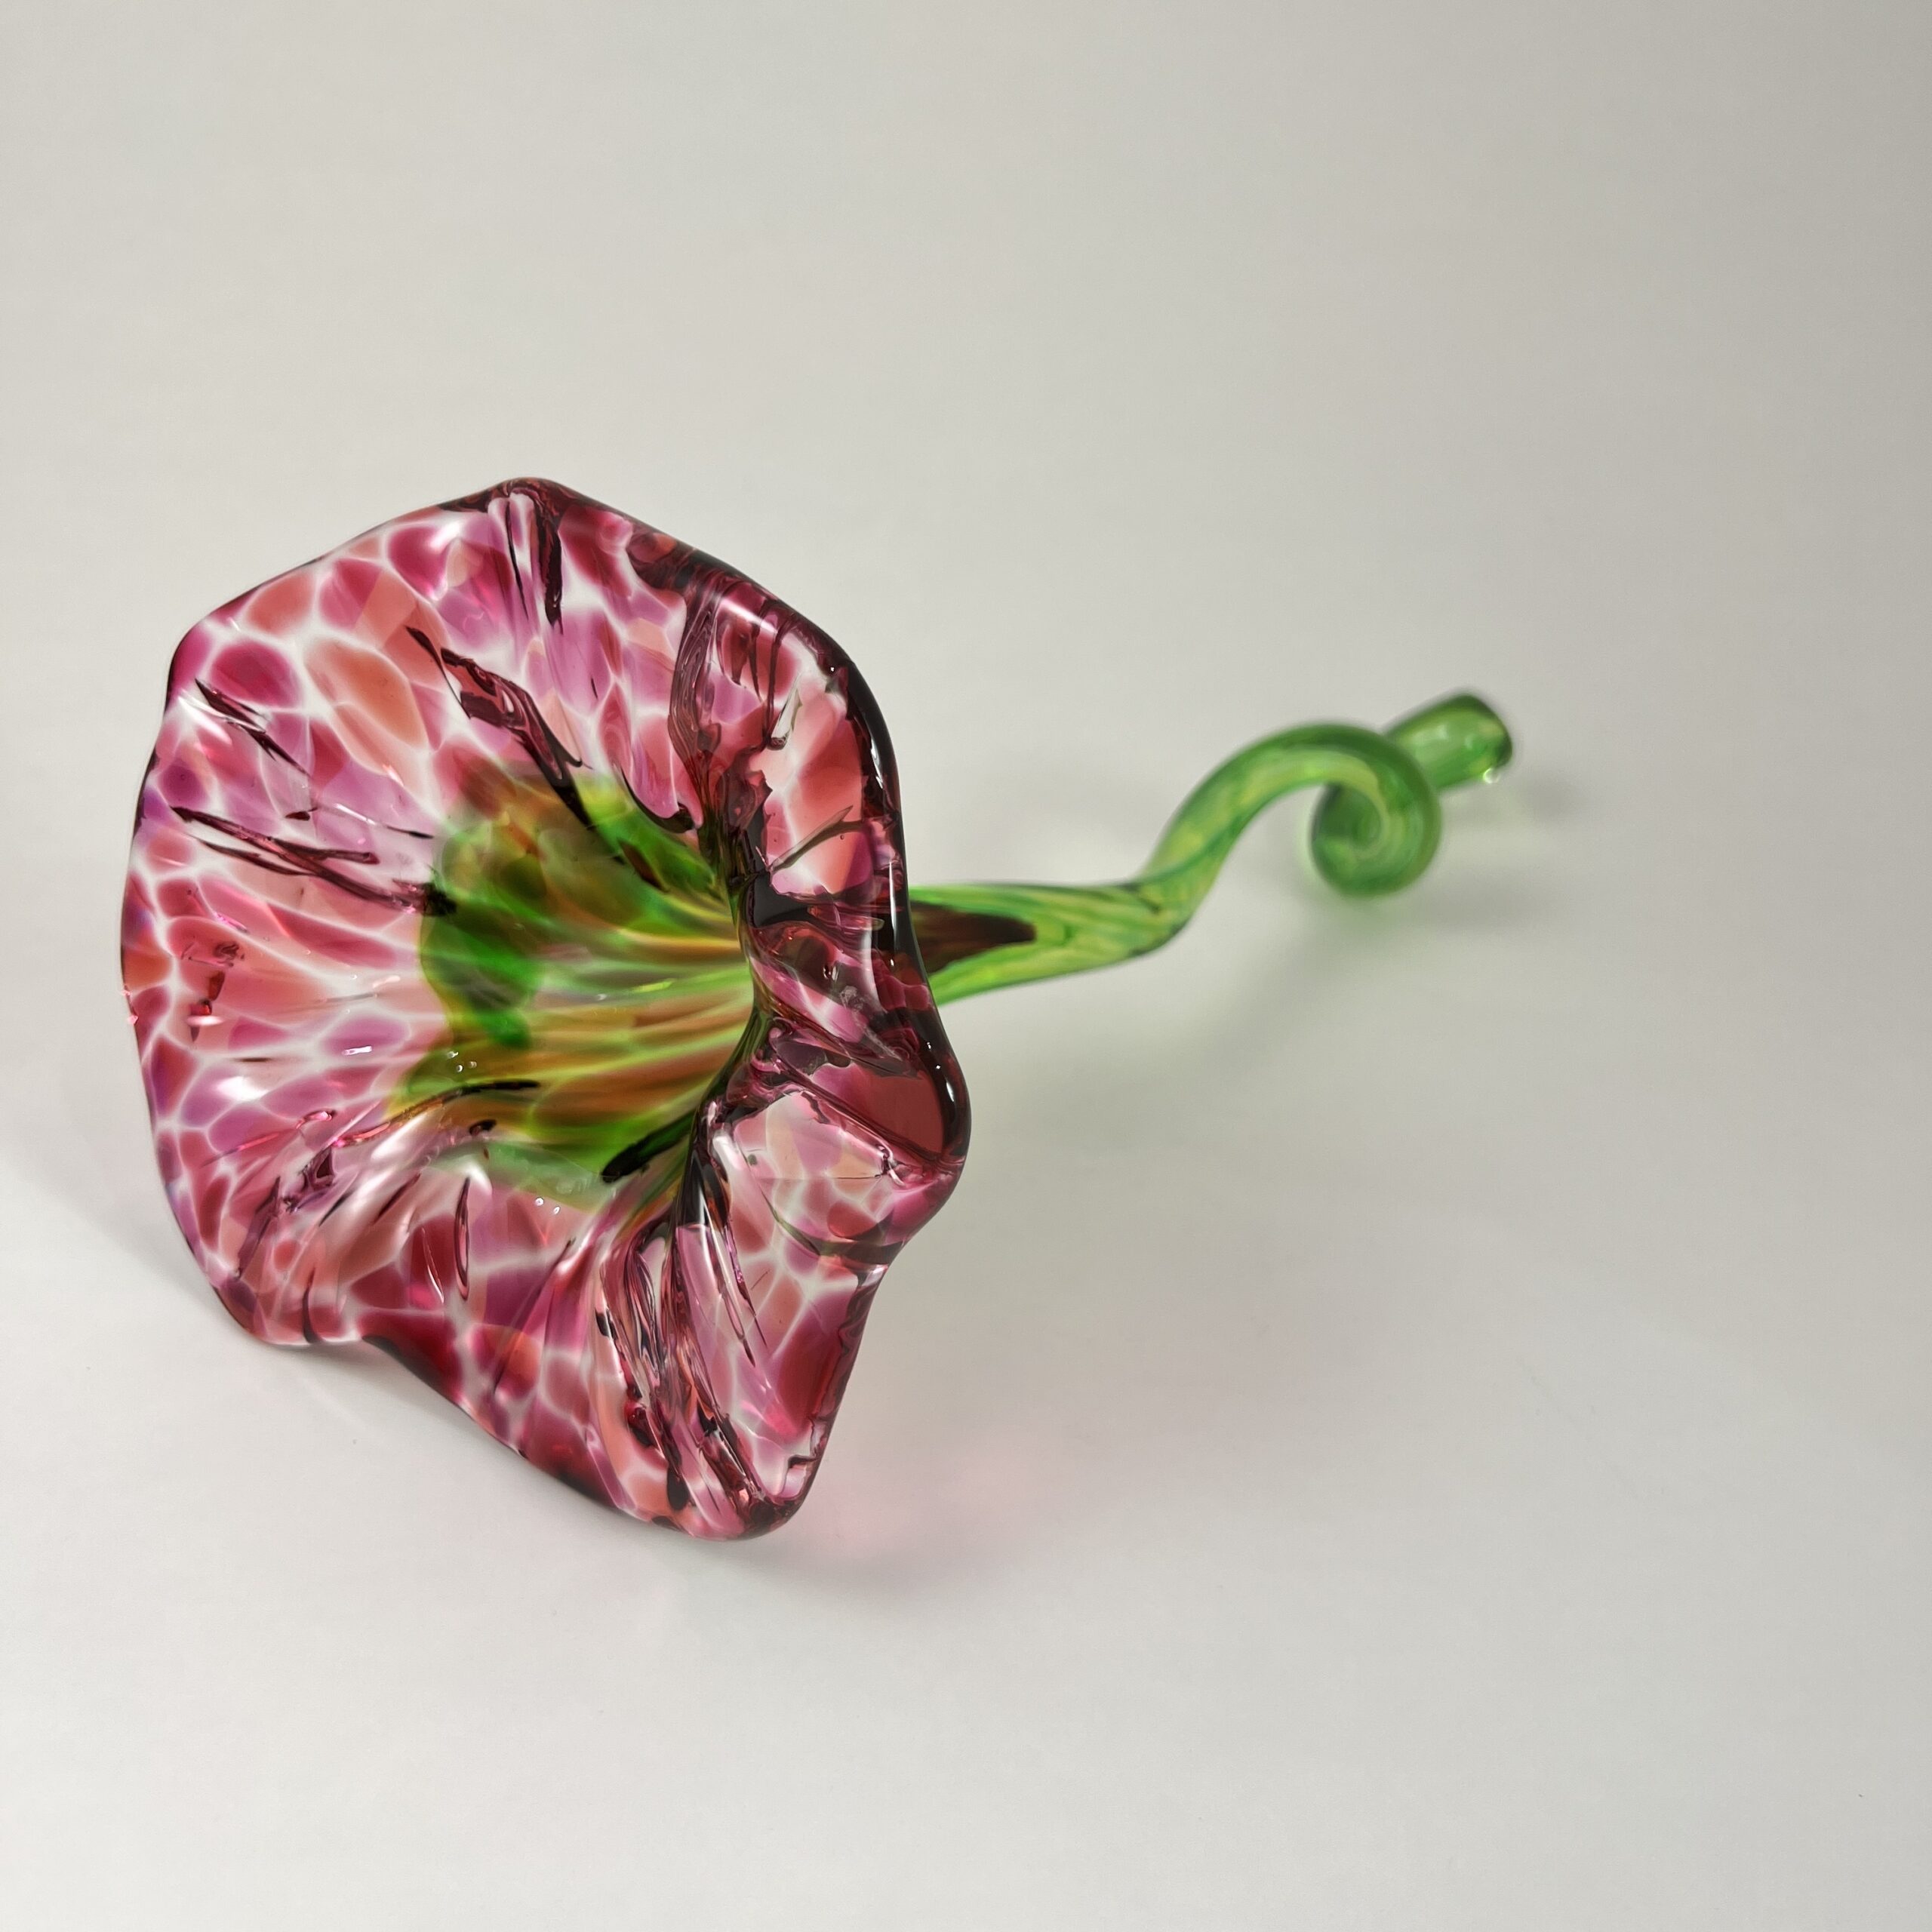 Flowers - McFadden Art Glass